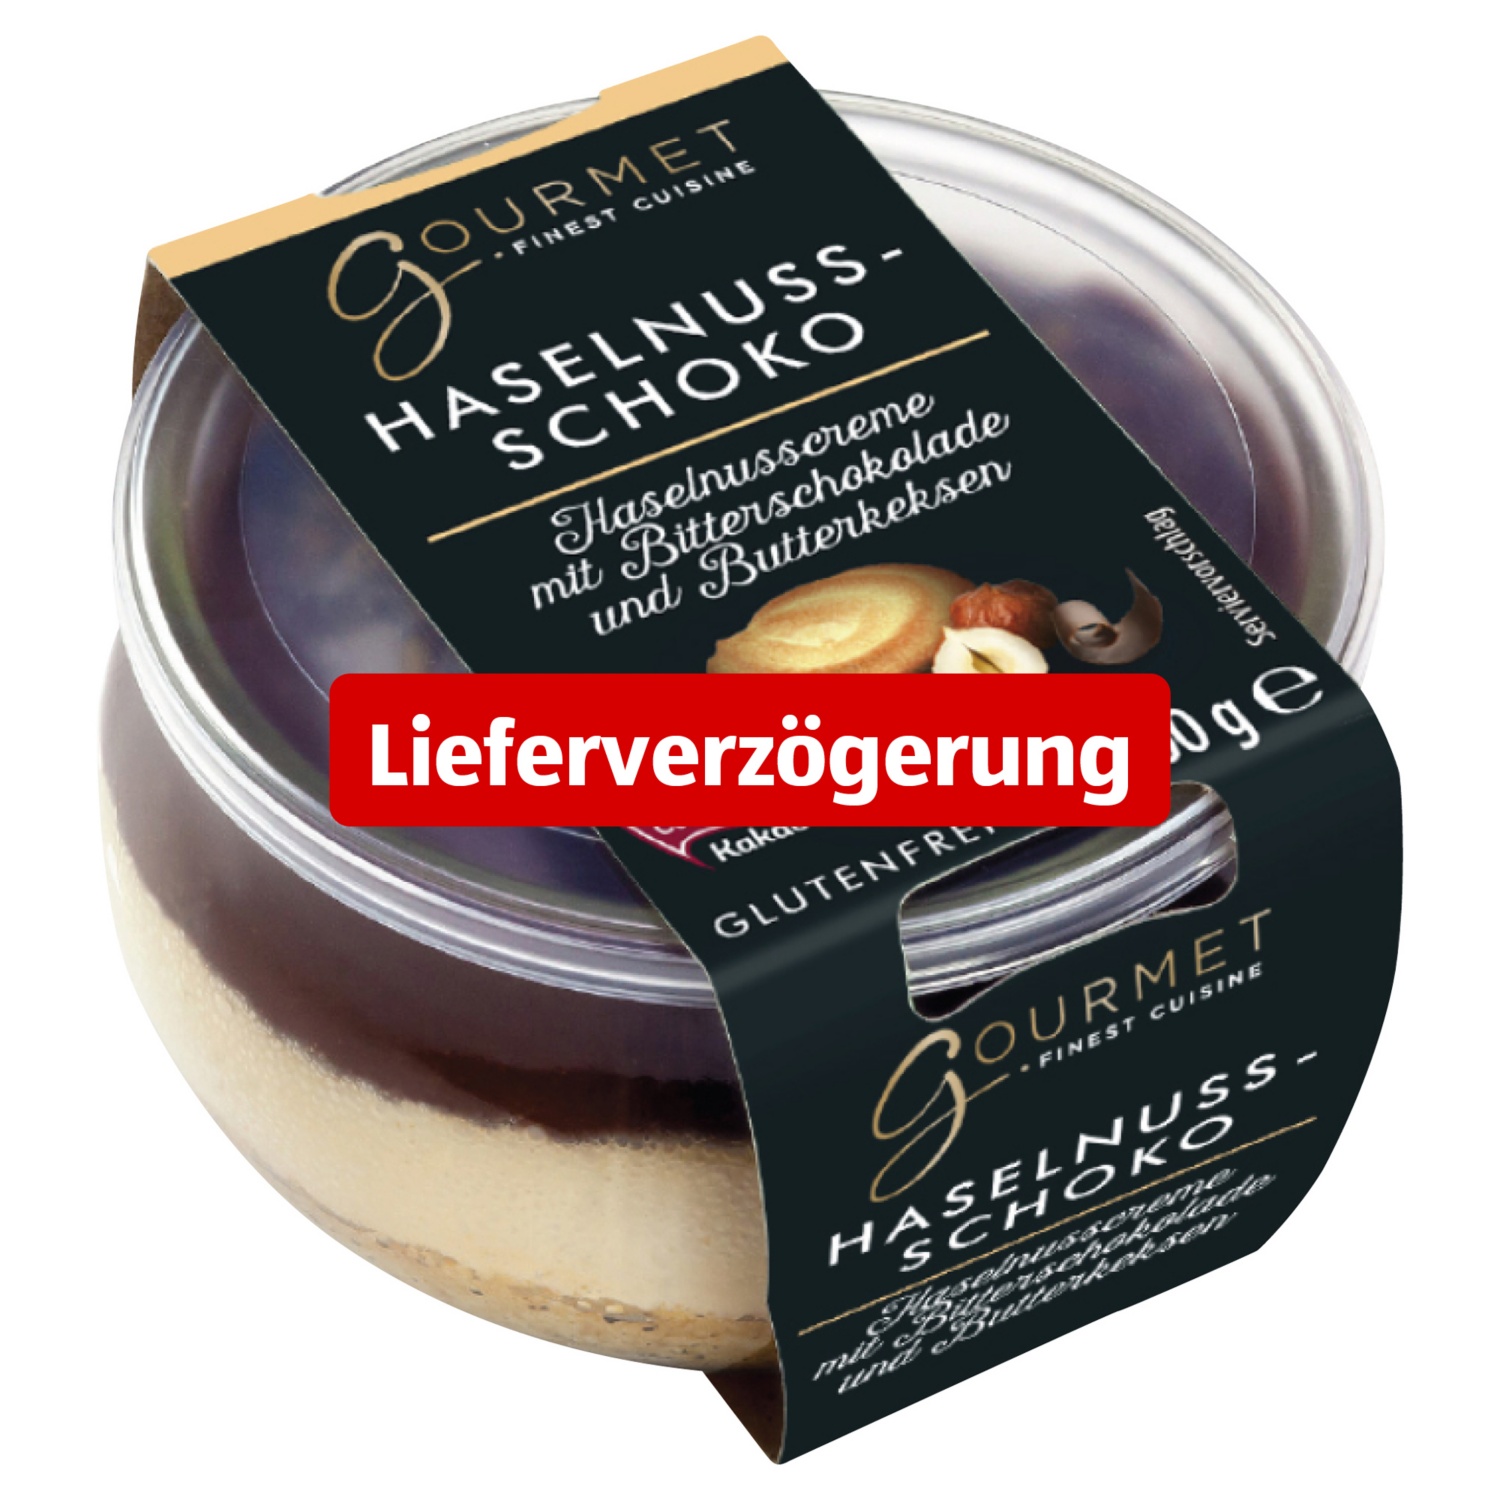 GOURMET, Dessert-Variation 100g, Haselnuss Schoko